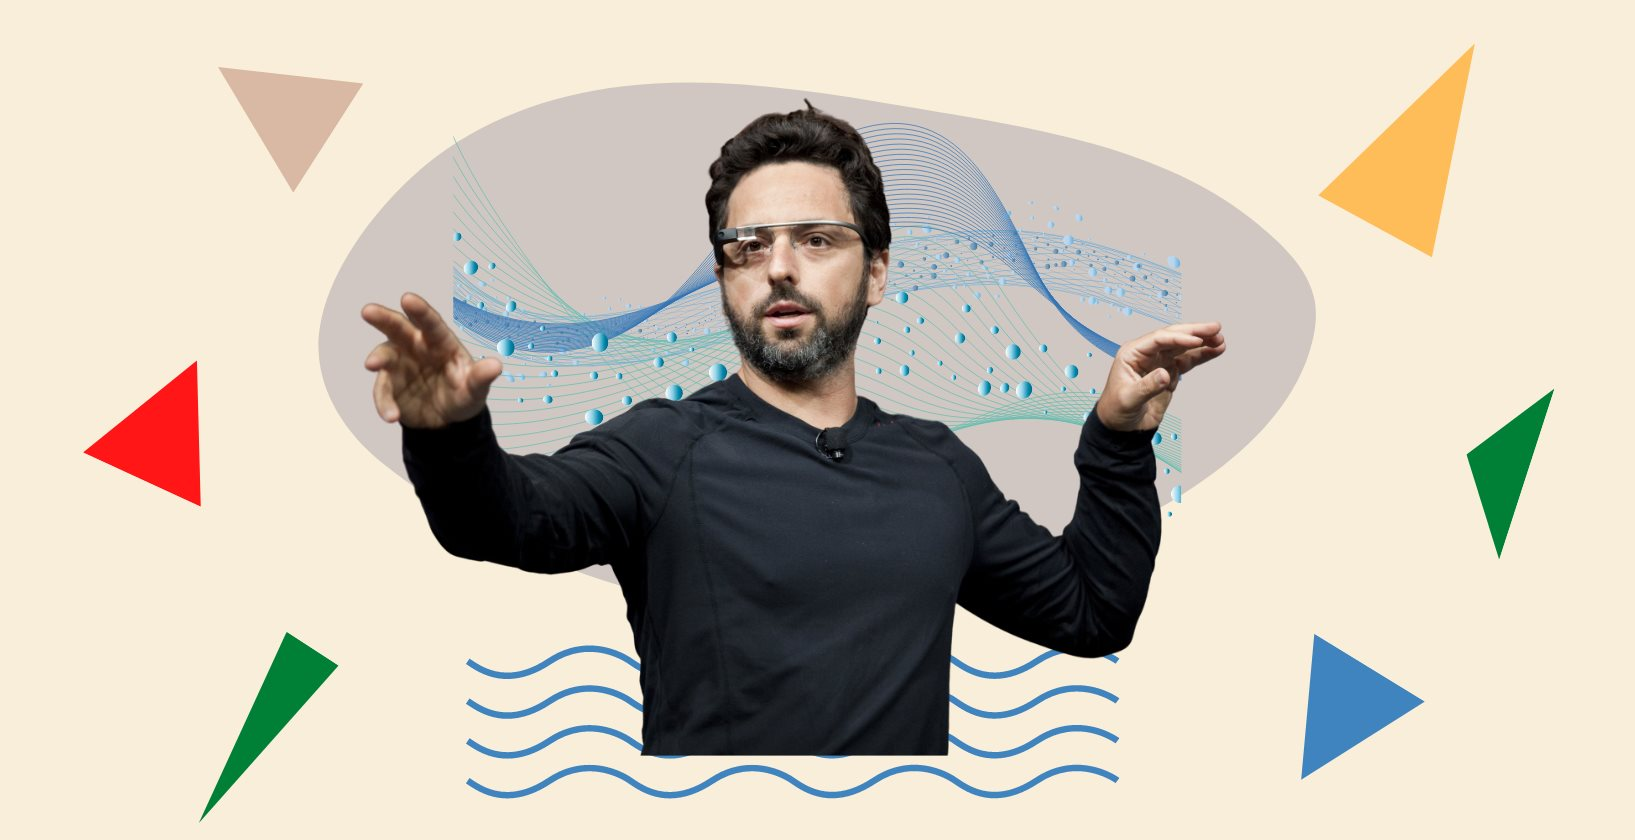 Rời Google, tỷ phú công nghệ Sergey Brin say sưa với một thú vui xa hoa, thuê 50 người chỉ để làm một việc ít ai ngờ - Ảnh 1.